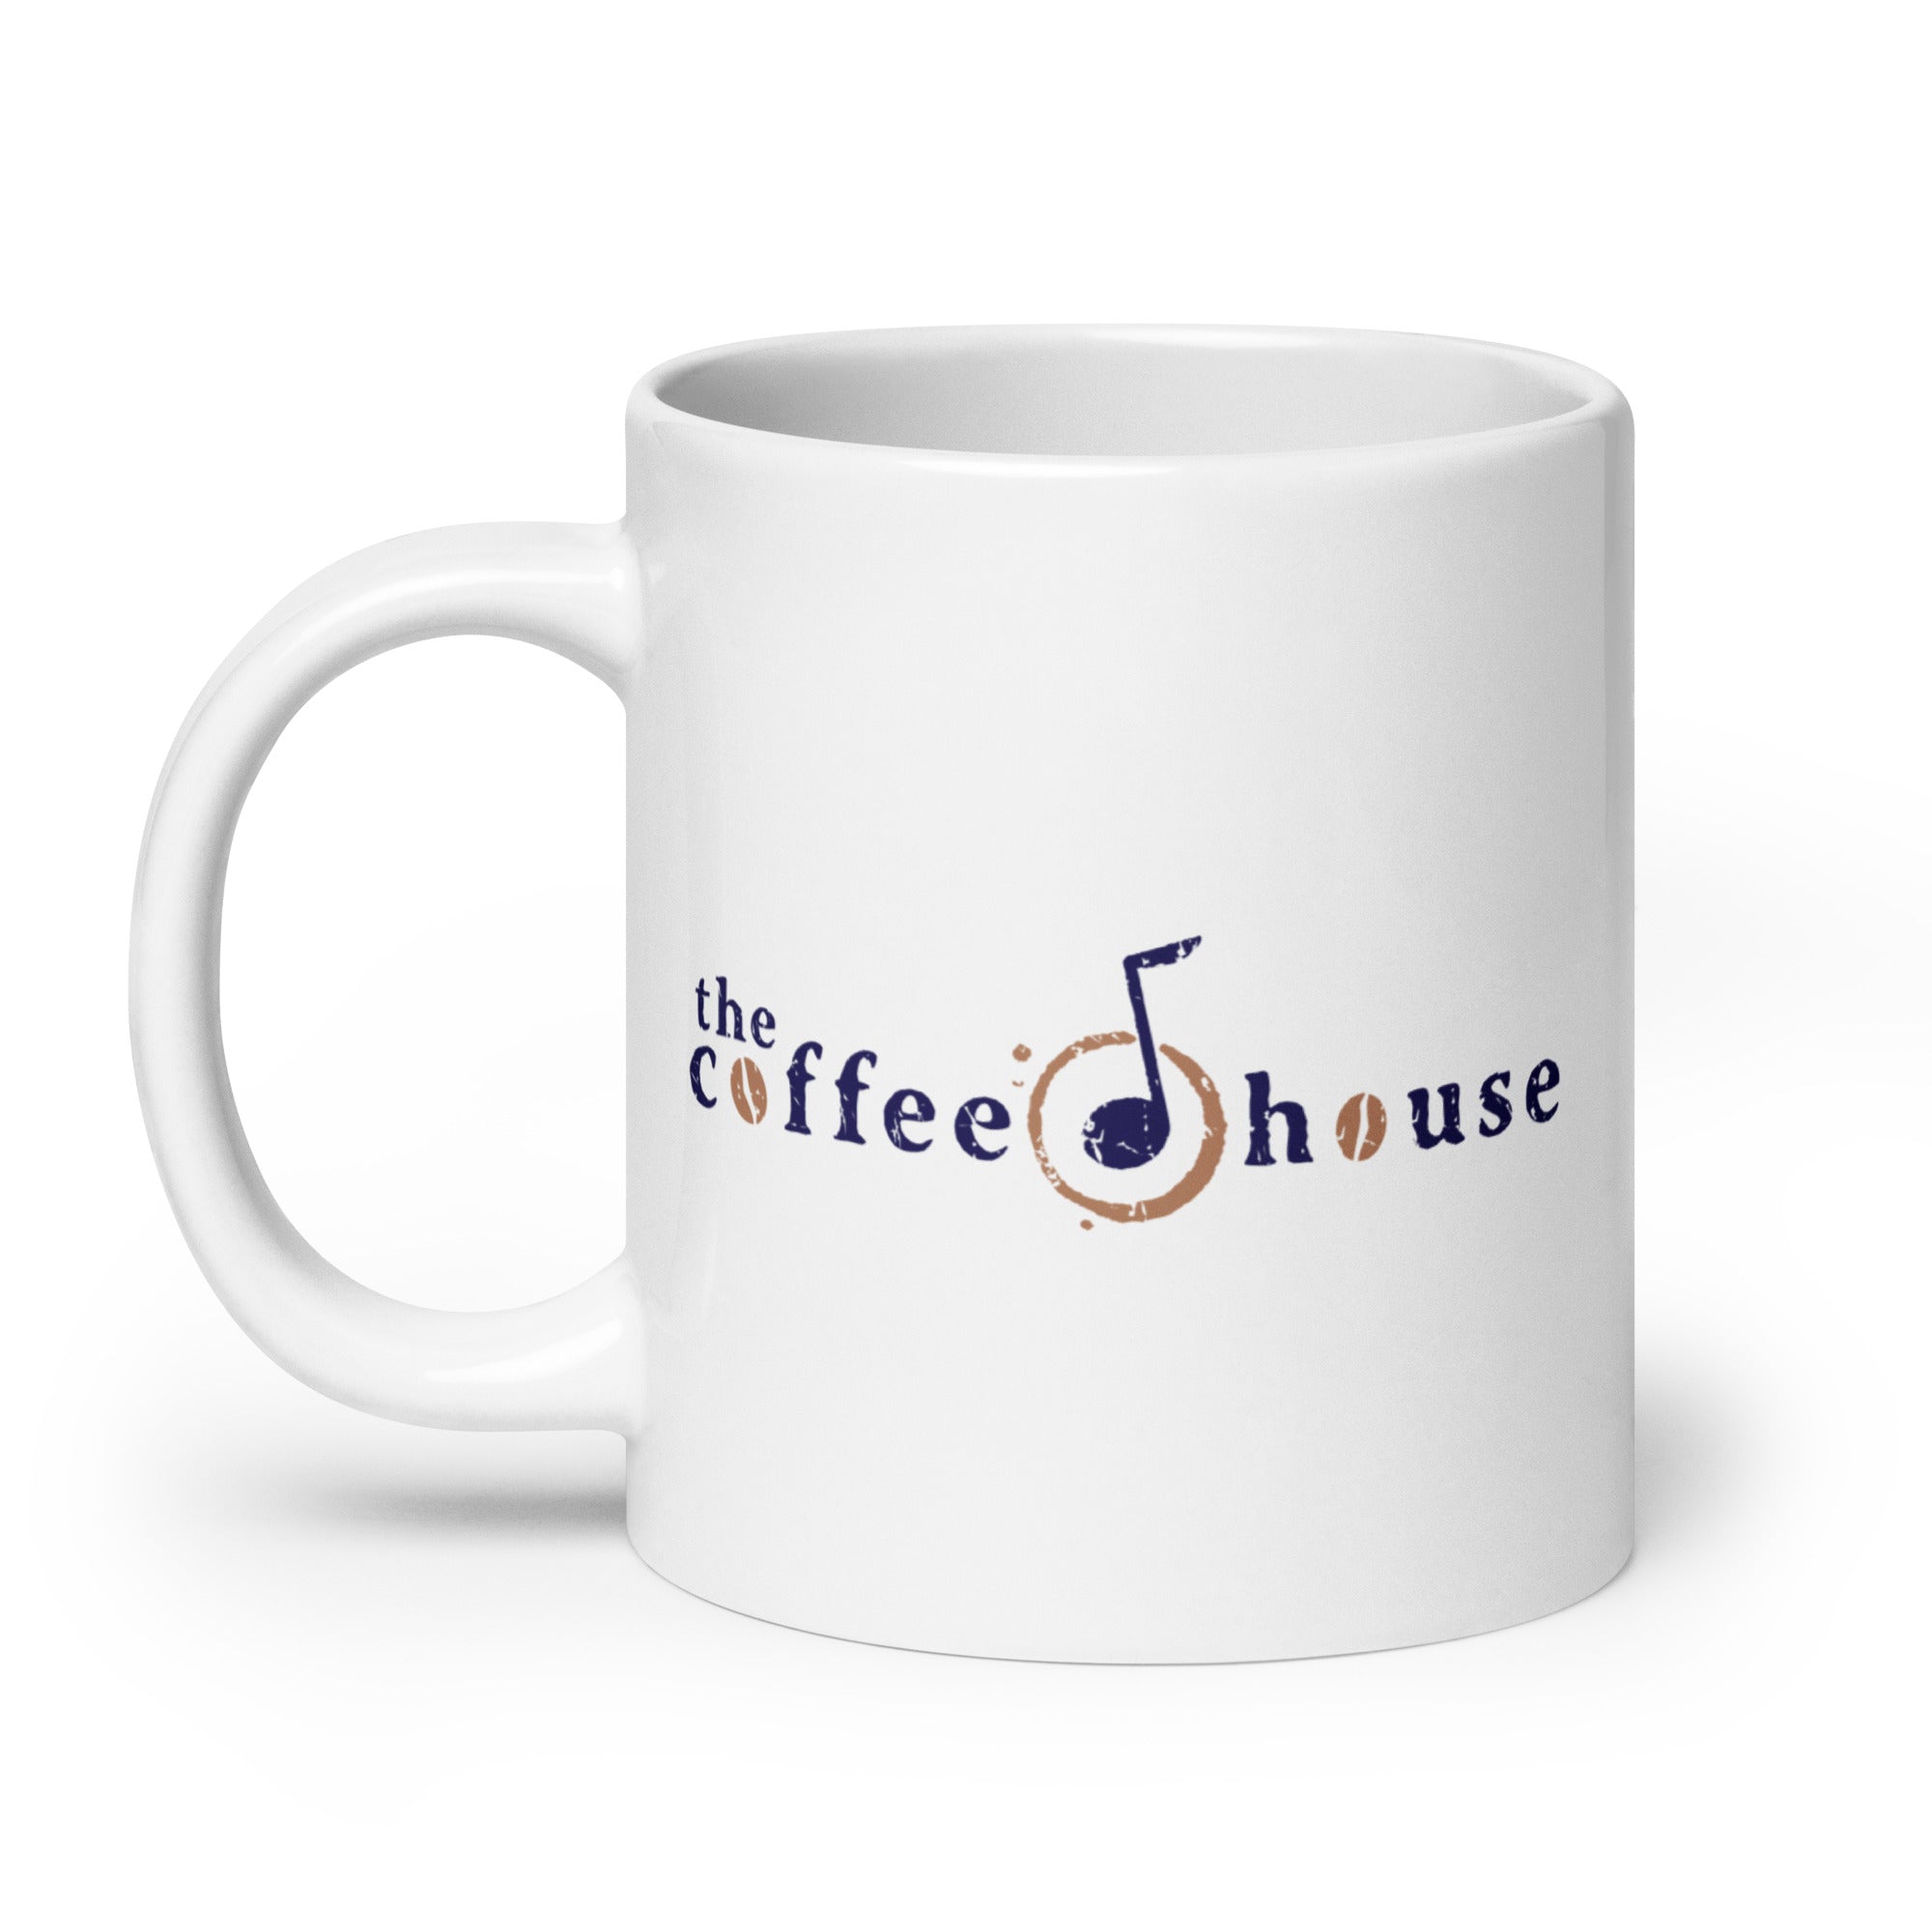 The Coffee House: Mug